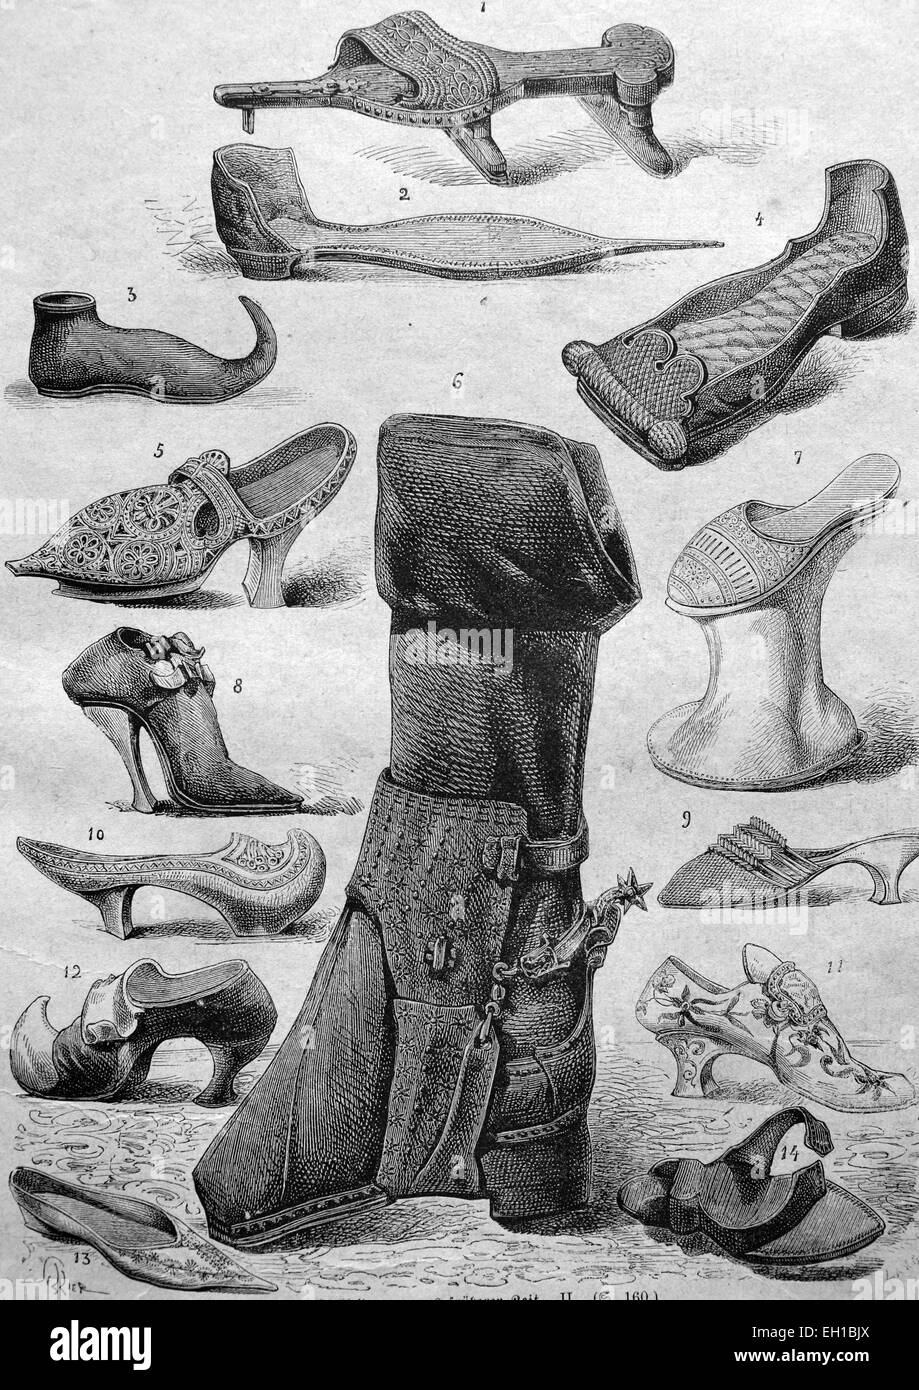 Schuh-Mode aus dem Mittelalter, 1 Krücke Schuh 2 - Spitzen Spitze Schuh oder Poulaine, 3 - peak Schuh oder Poulaine, 4 - flache Schuh, 5 - 6 - Reitstiefel, 7 - Kuehfuss, 8 - Highheels, 9 - Hausschuhe aus der Zeit der französischen Revolution, 10 - hölzerne Patten, Holzschuh, Anfang des 17. Jahrhunderts, 11 - venezianischen Lederschuh 12 - Holzschuh mit einem Leder - Atlas Schuh der Höfling 14 - Schweißen-13 einfache Holzschuh , historische Abbildung, 1877 Stockfoto